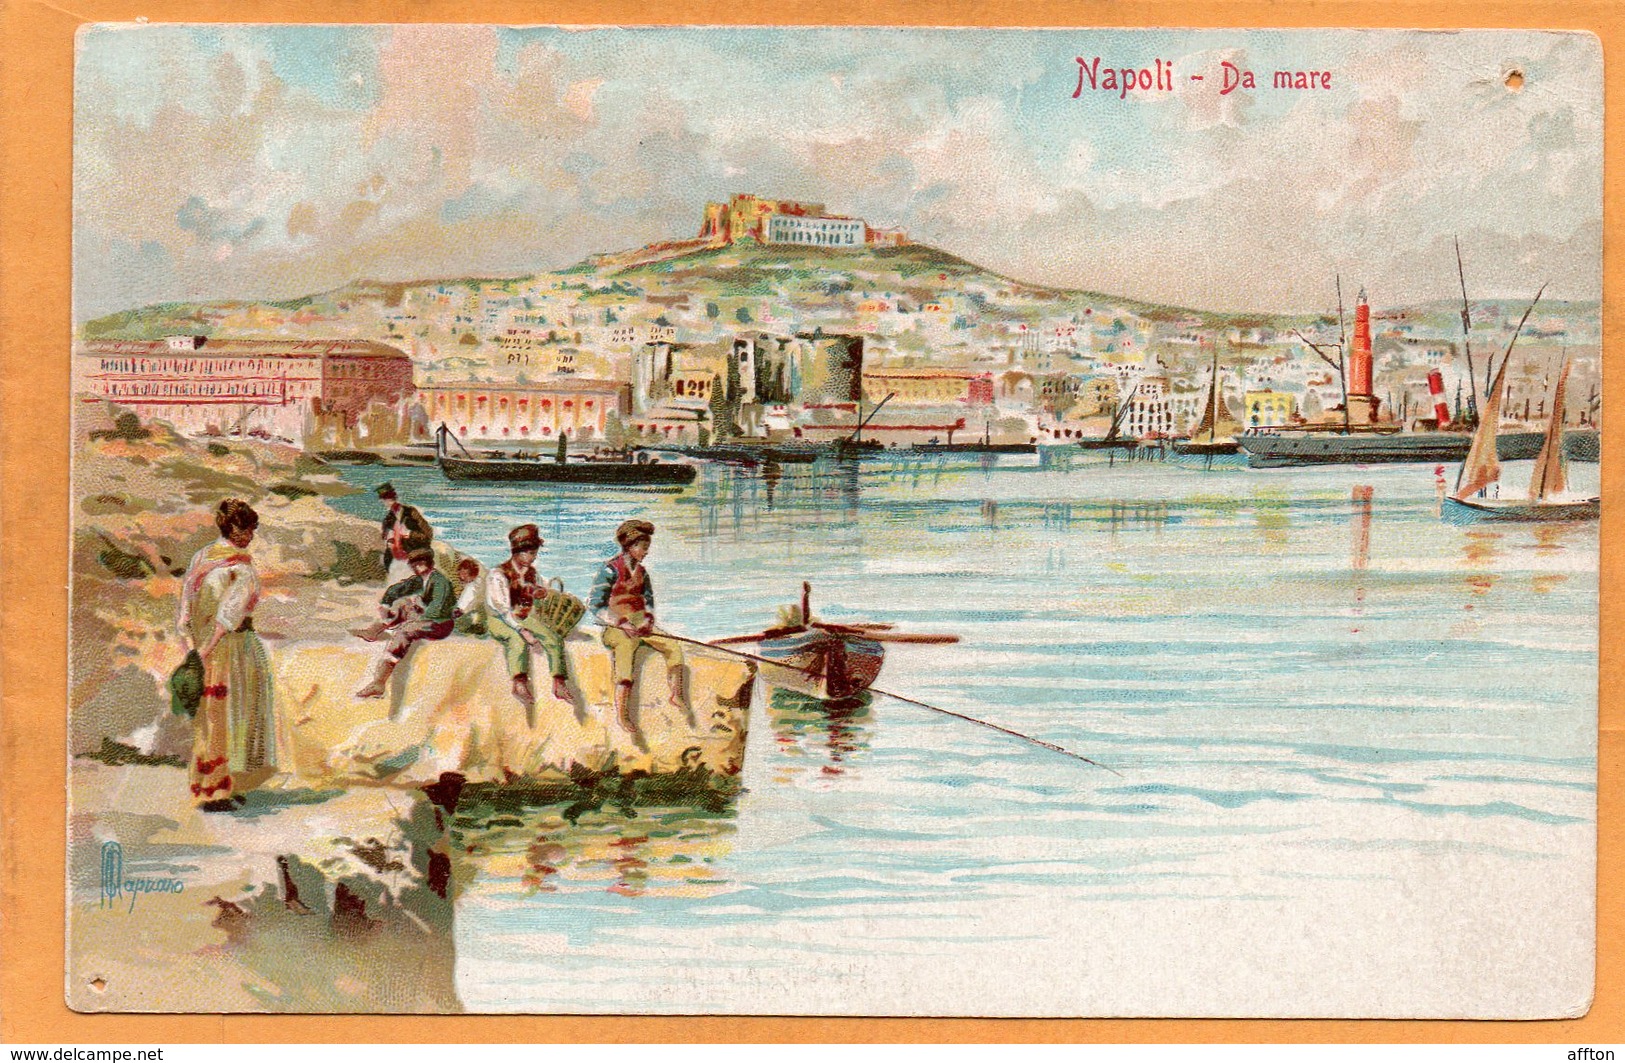 Napoli Italy 1900 Postcard - Napoli